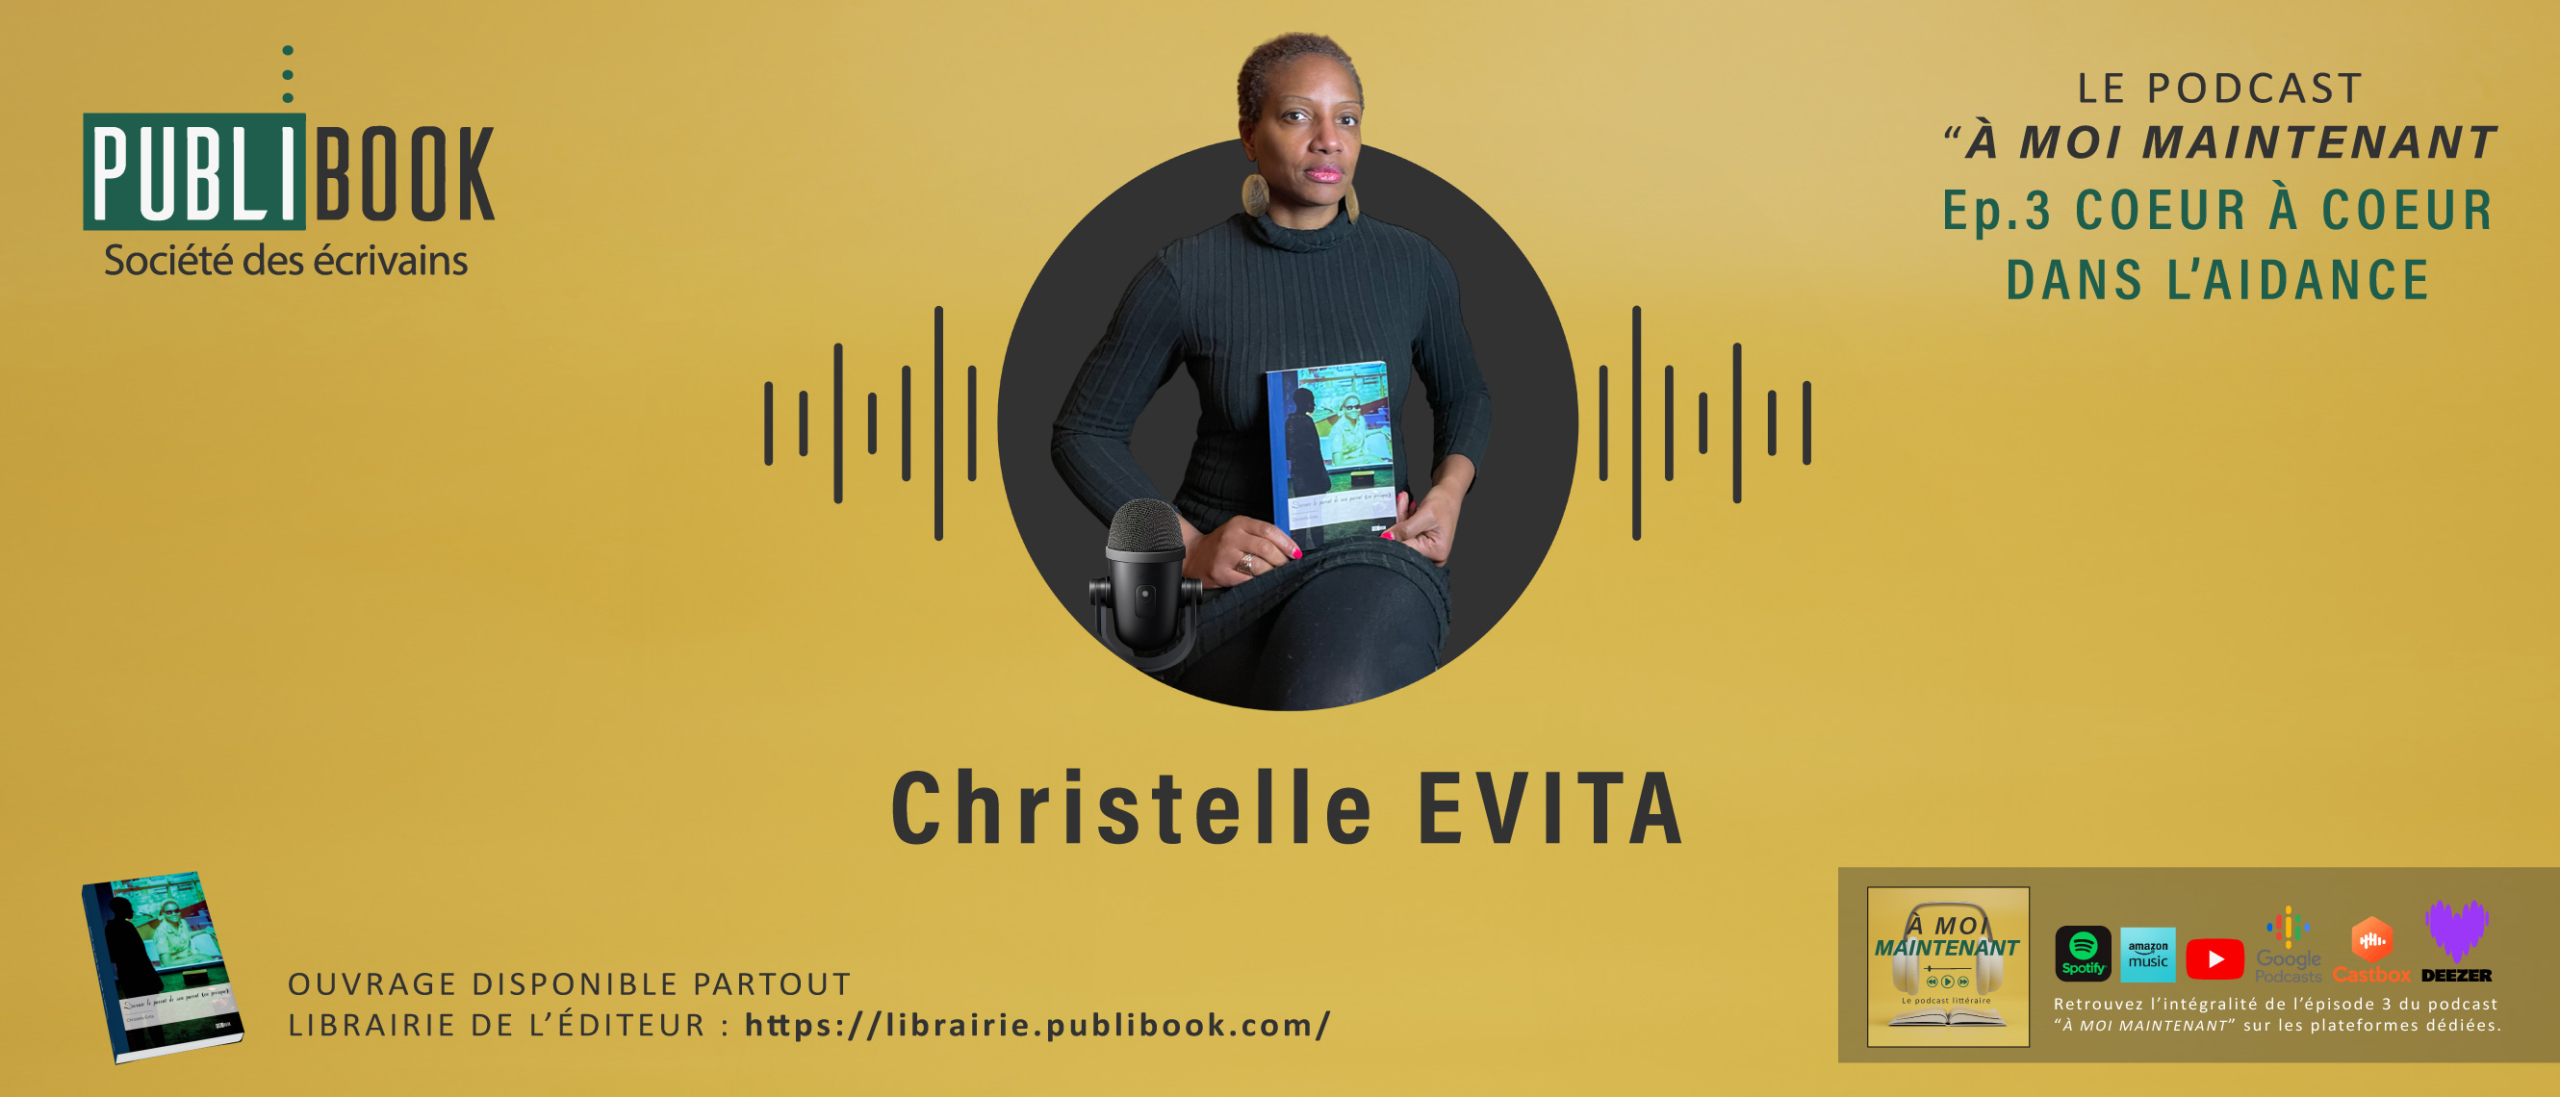 Ep.3 Cœur à cœur dans l’aidance avec Christelle Evita